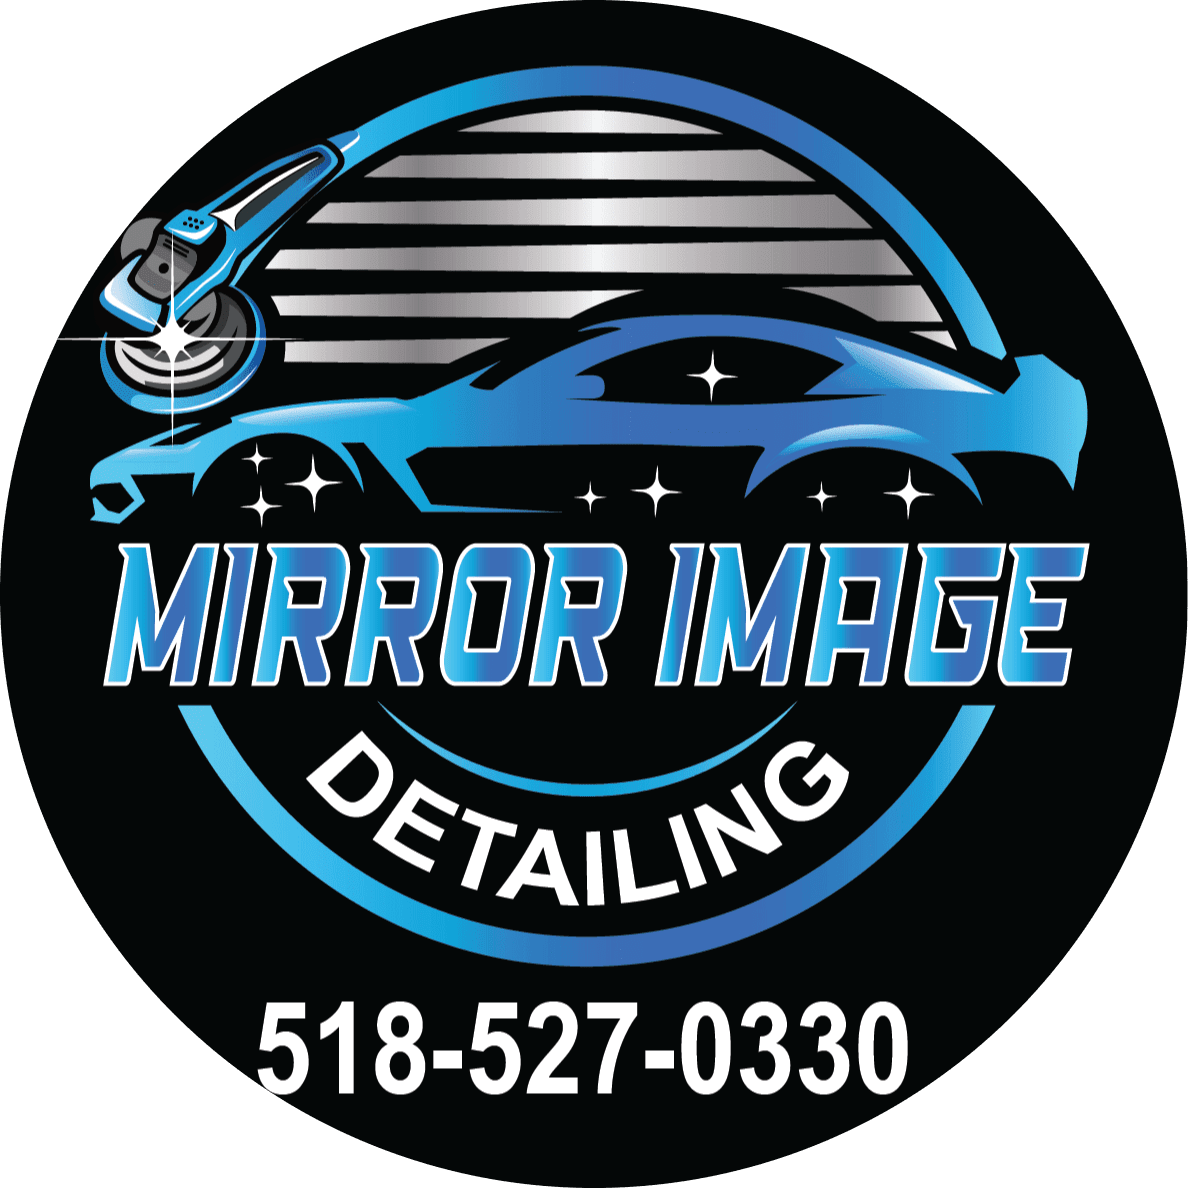 Mirror Image Detailing LLC